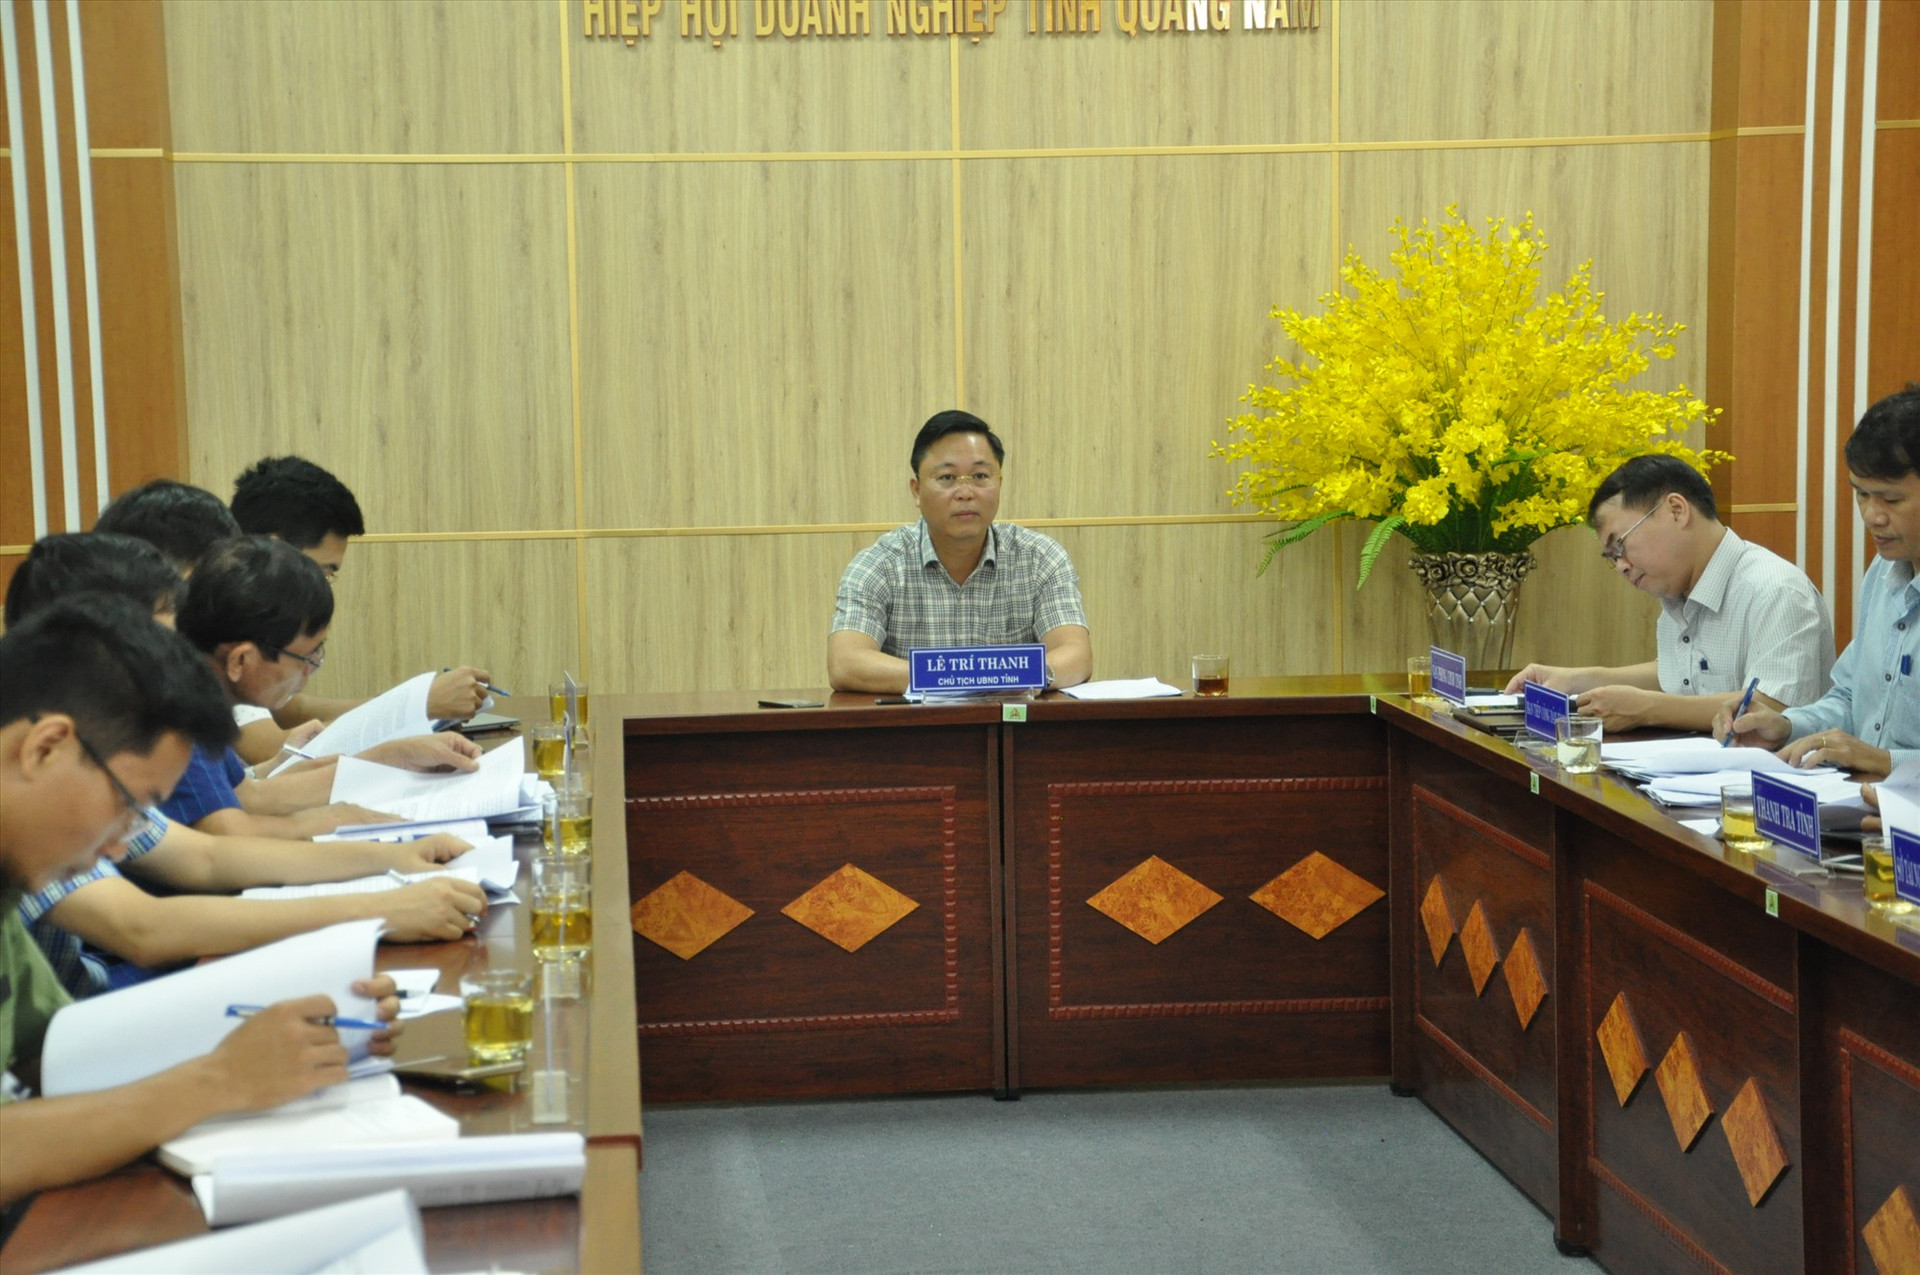 Chủ tịch UBND tỉnh Lê Trí Thanh khẳng định tỉnh luôn quan tâm đến quyền lợi của người dân. Ảnh: X.P